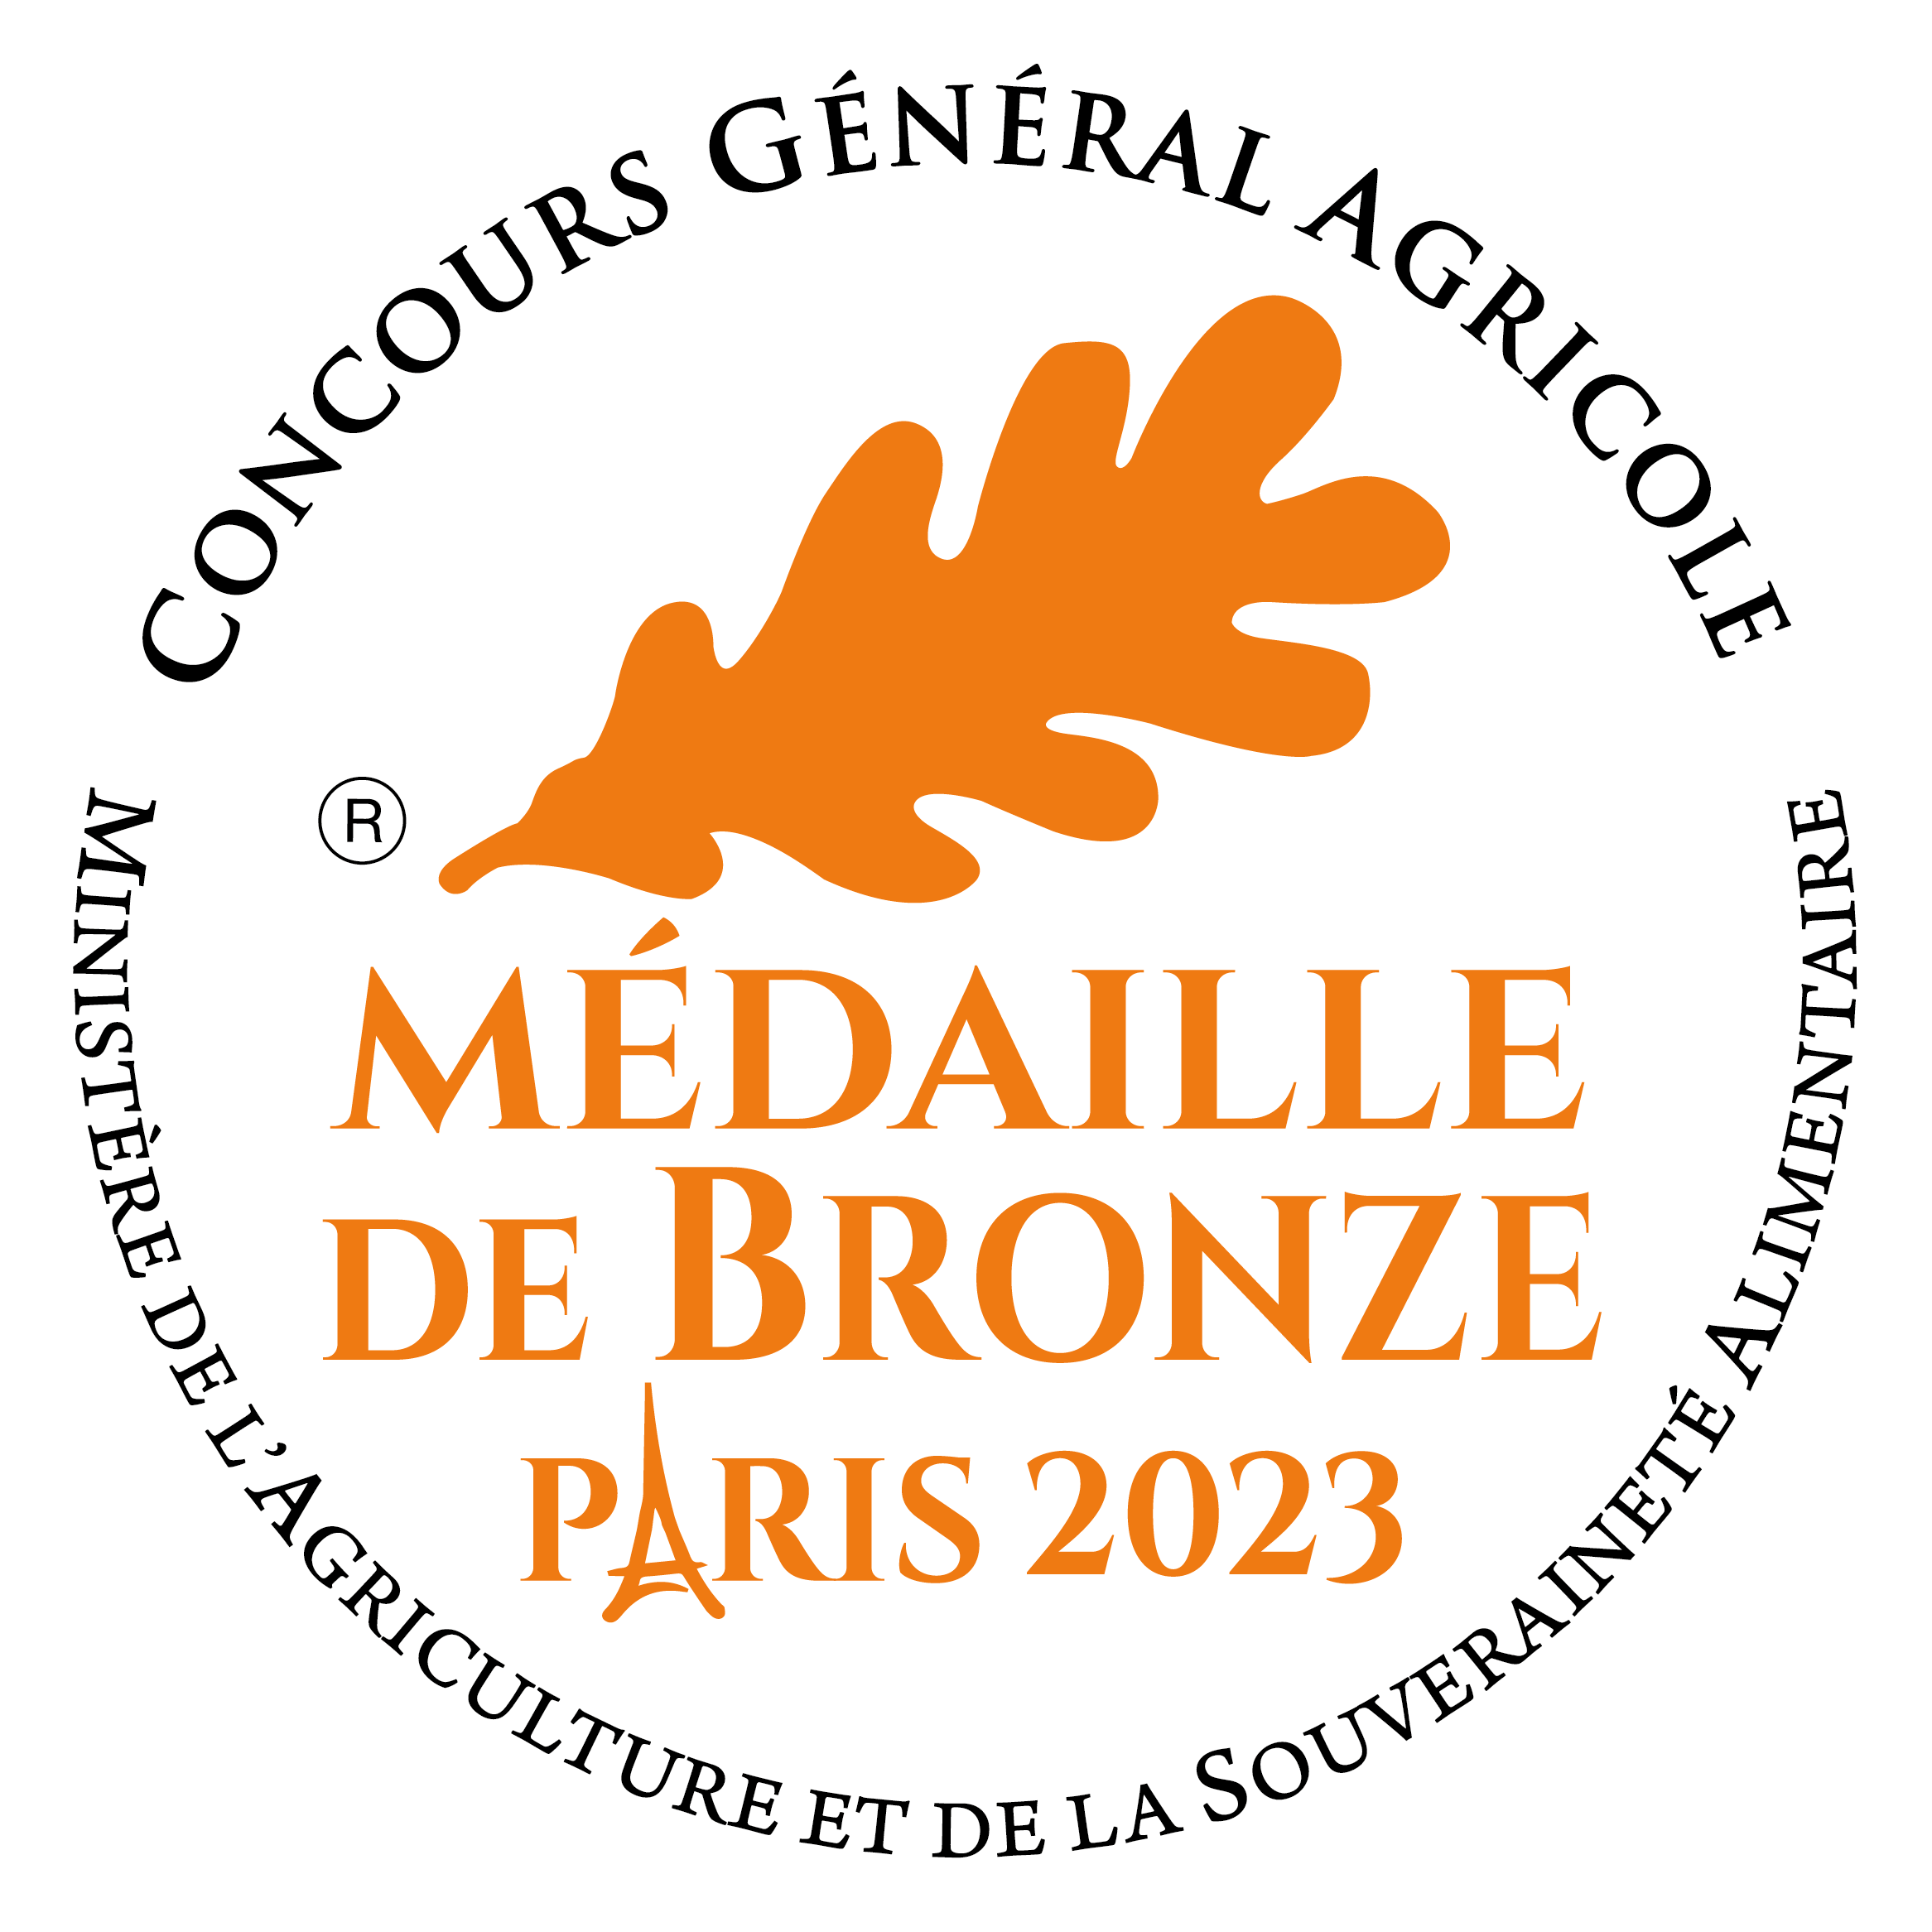 2023-Medaille_Bronze_concours_general_agricole_paris